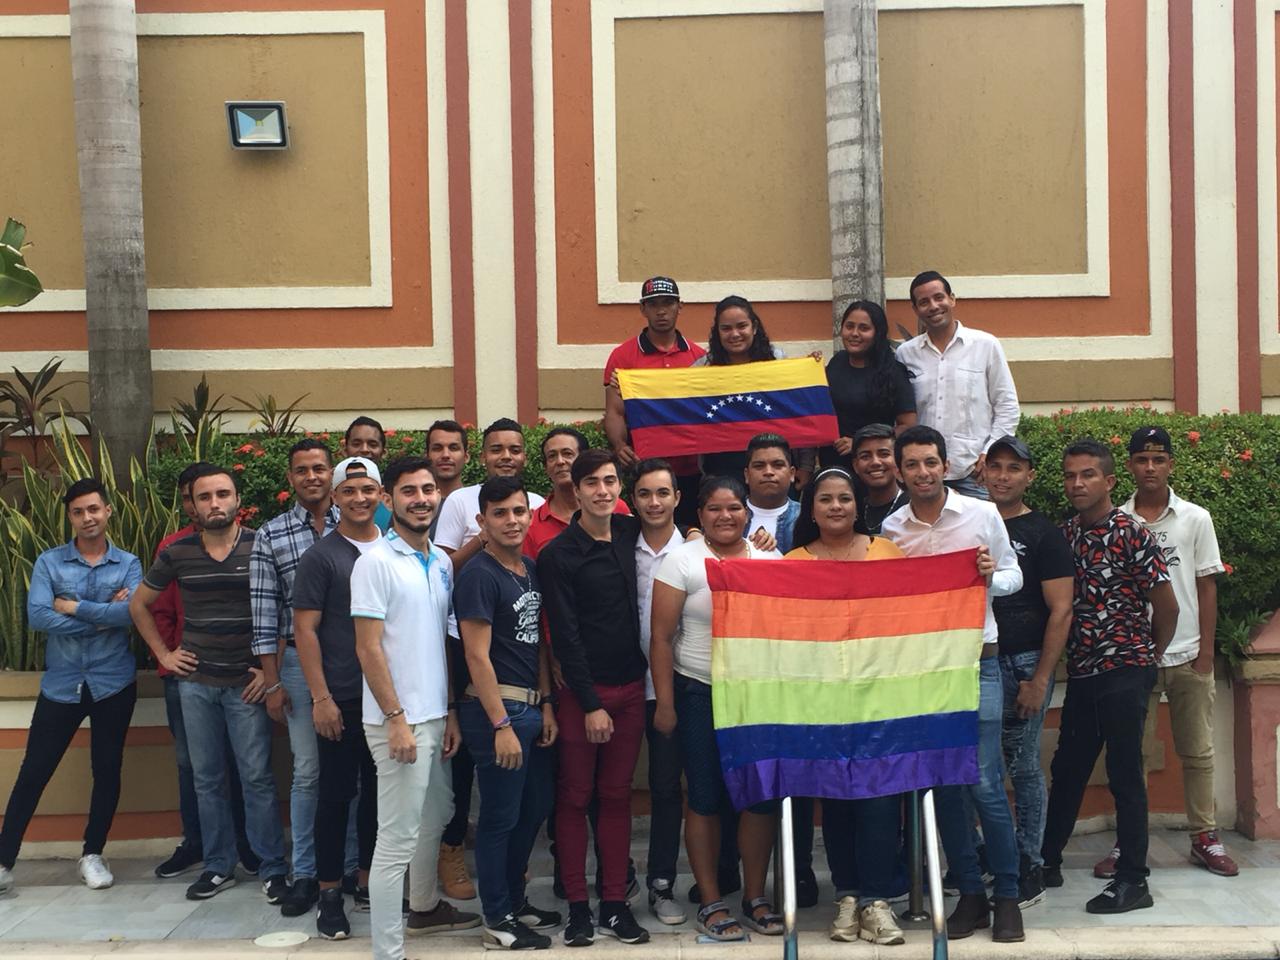  Crisis humanitaria de venezolanos LGBT en el Caribe